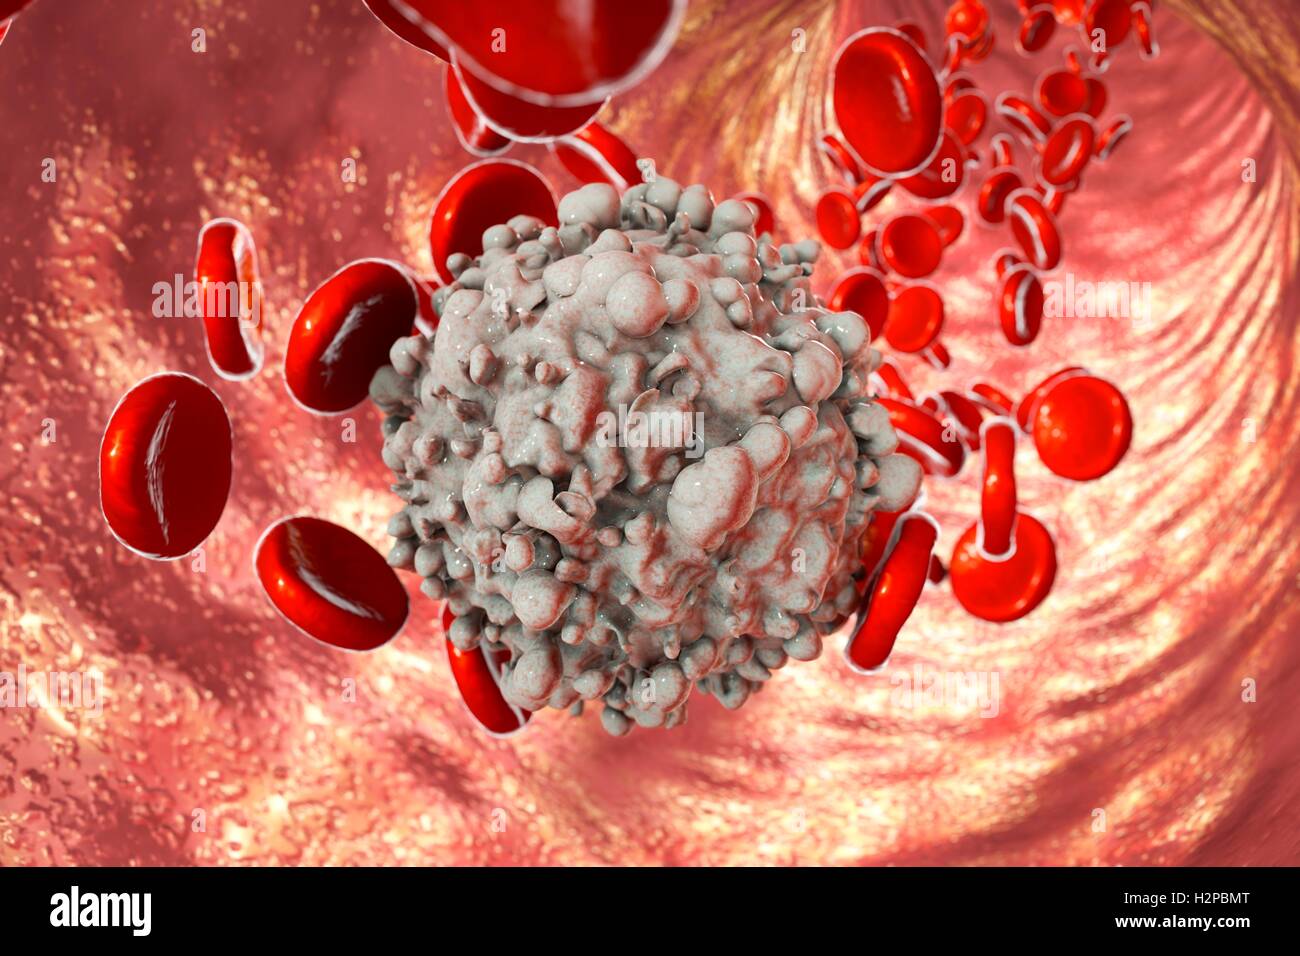 Computer Bild von roten Blutkörperchen und ein Krebs Leukämie weiße Blutkörperchen. Stockfoto